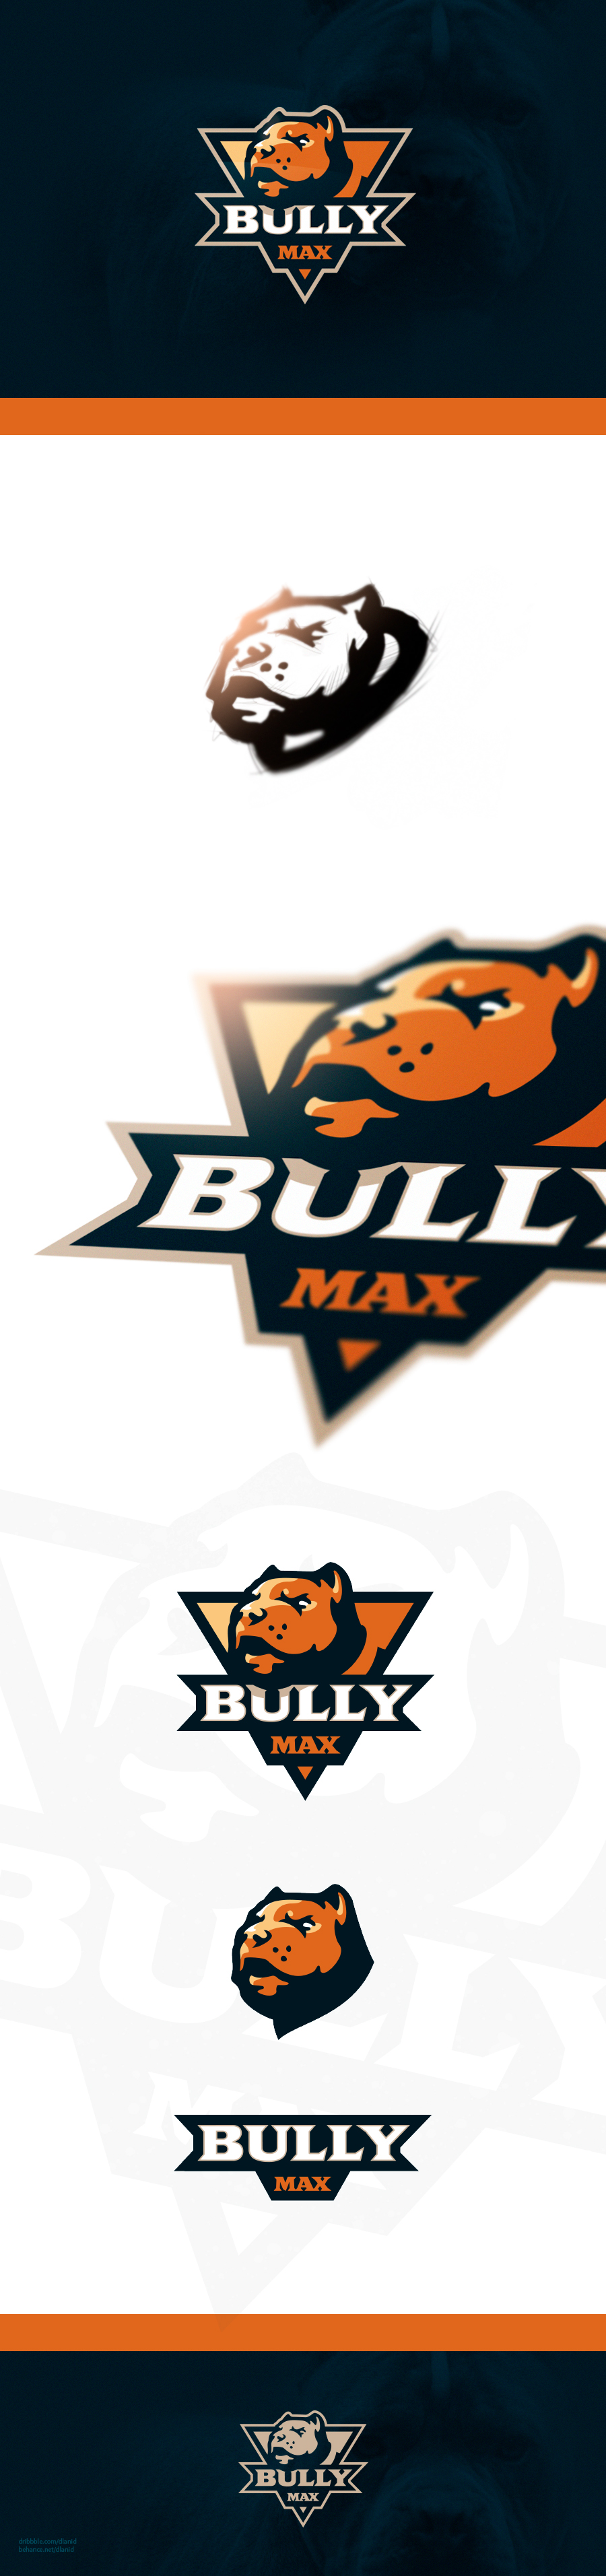 dog sports logo Mascot identity branding  bulldog Pit Bull Sports logo sport logo